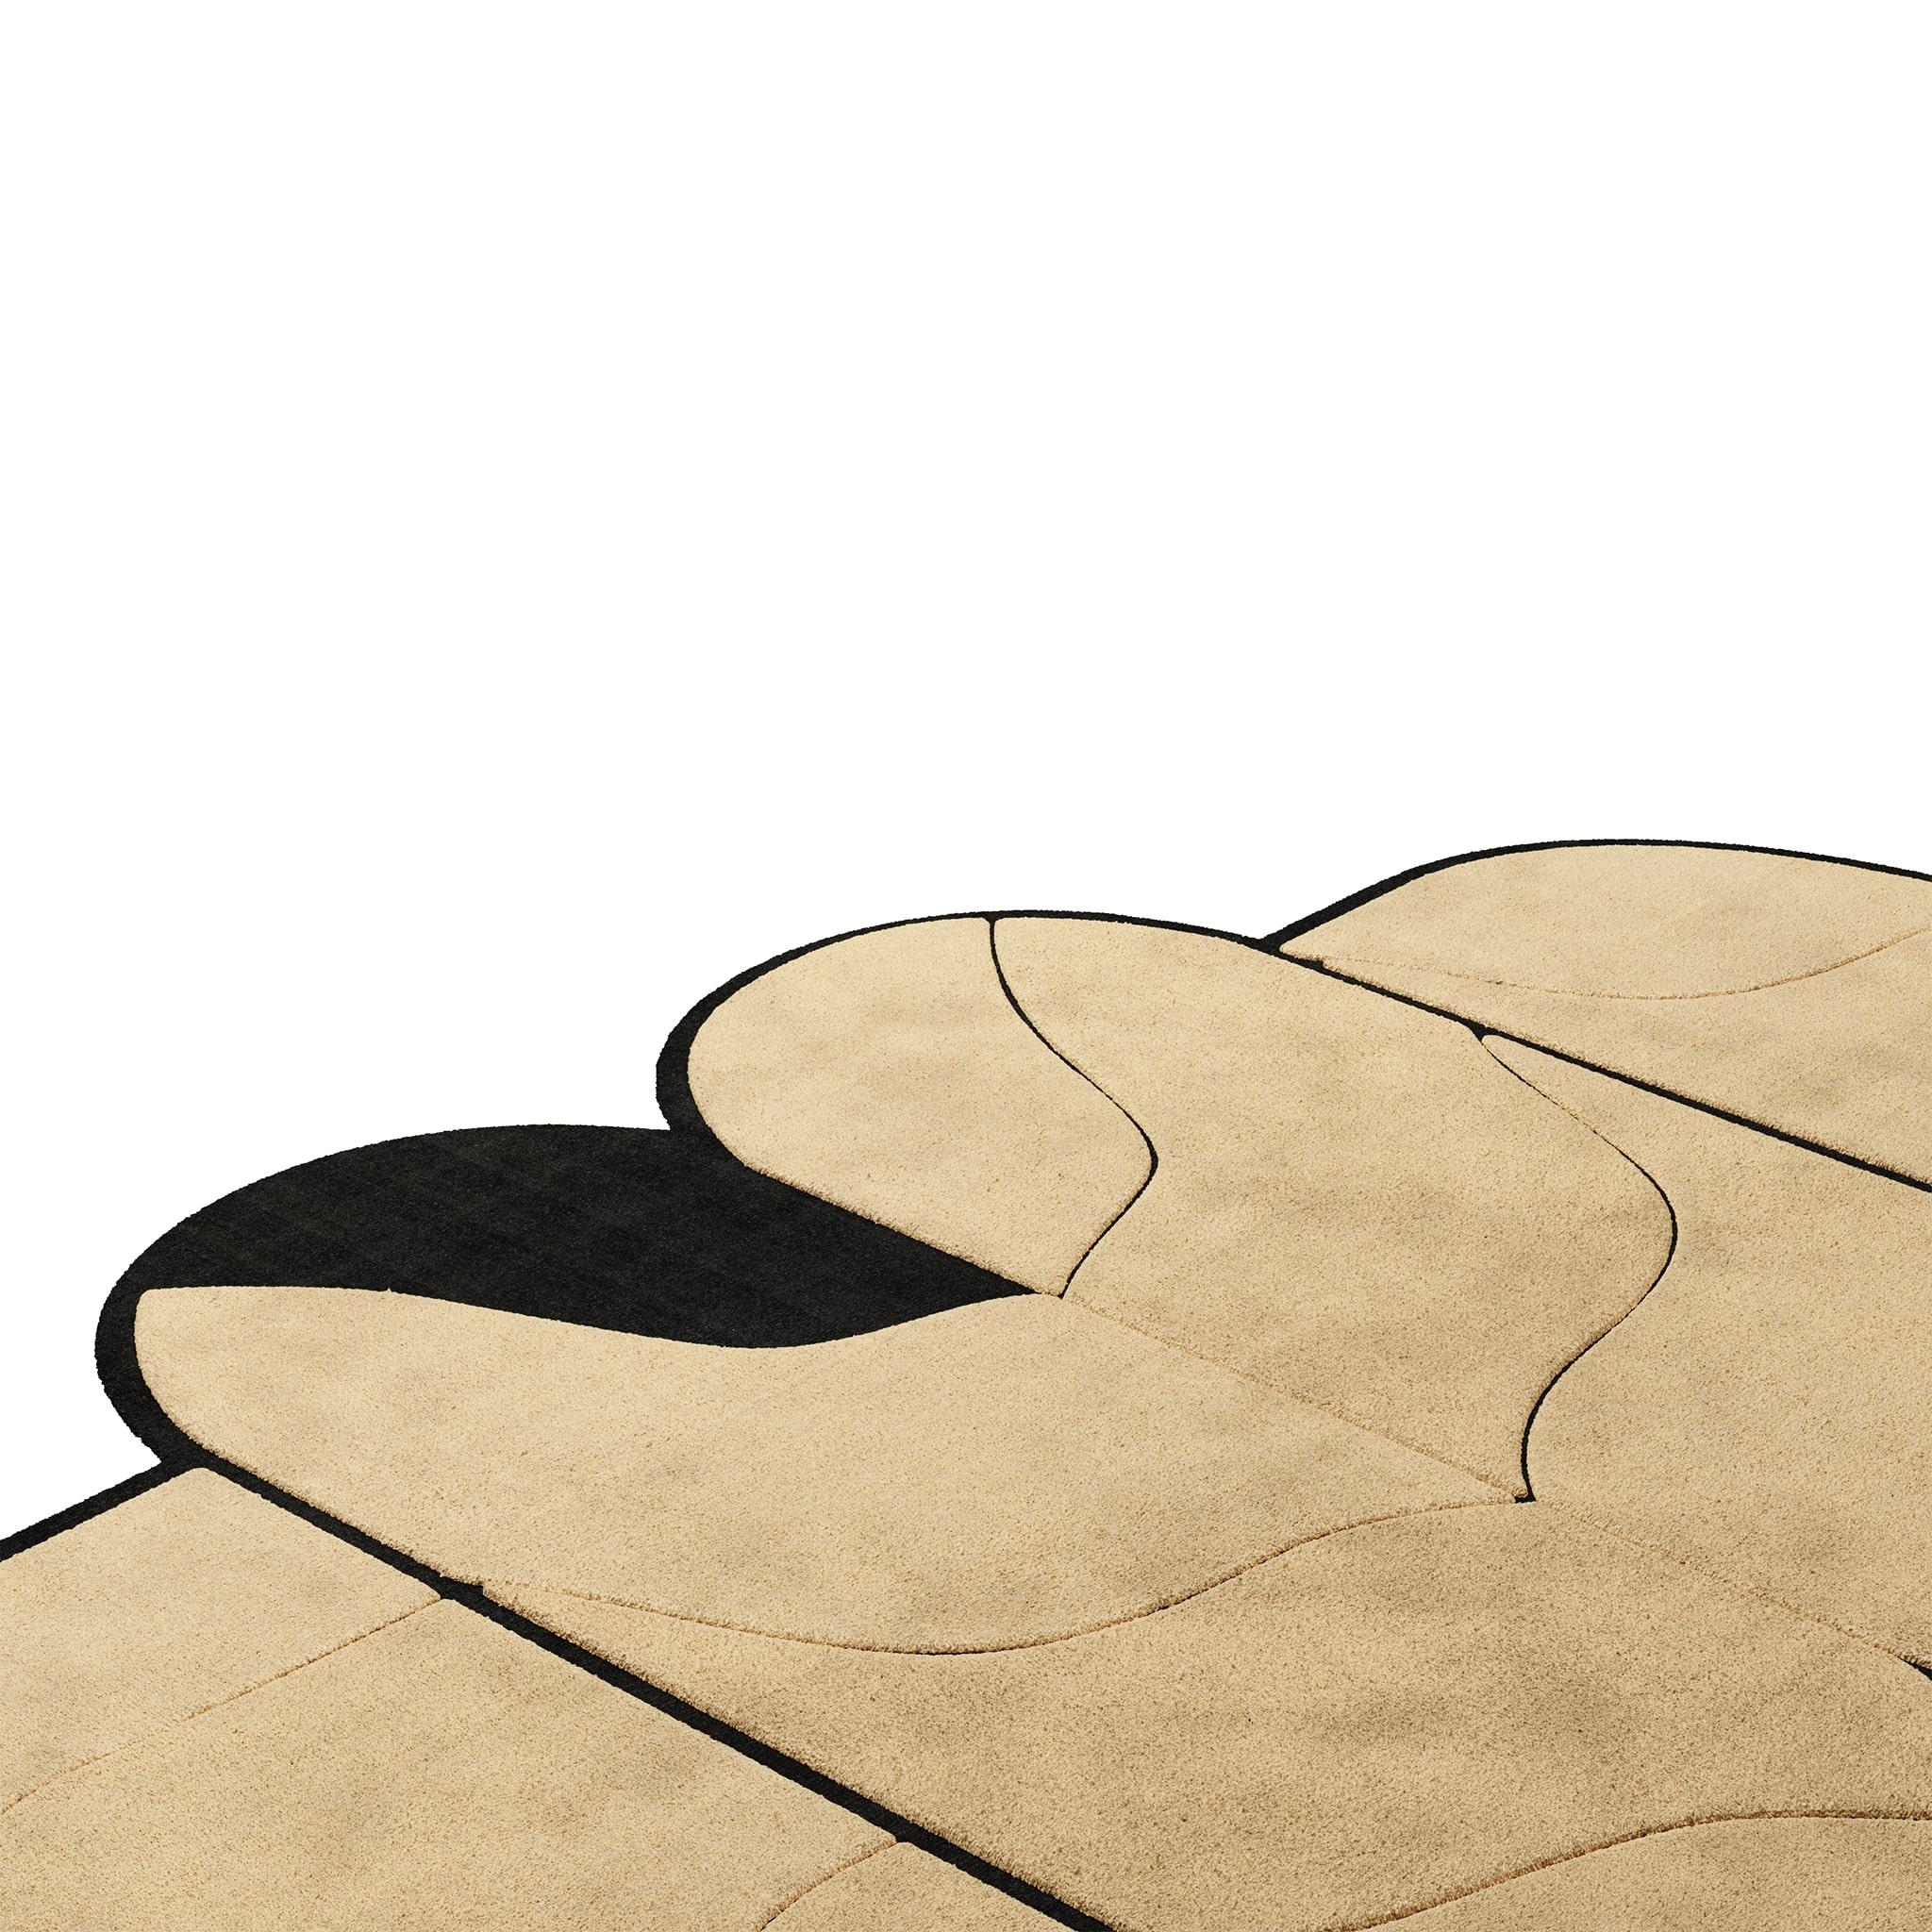 Tapis géométrique tufté à la main, moderne, mid-century, beige pastel et noir
Tapis Pastel #04 est un tapis pastel qui mélange les vibrations de la modernité du milieu du siècle avec le style Design/One. L'association du noir et des teintes sable